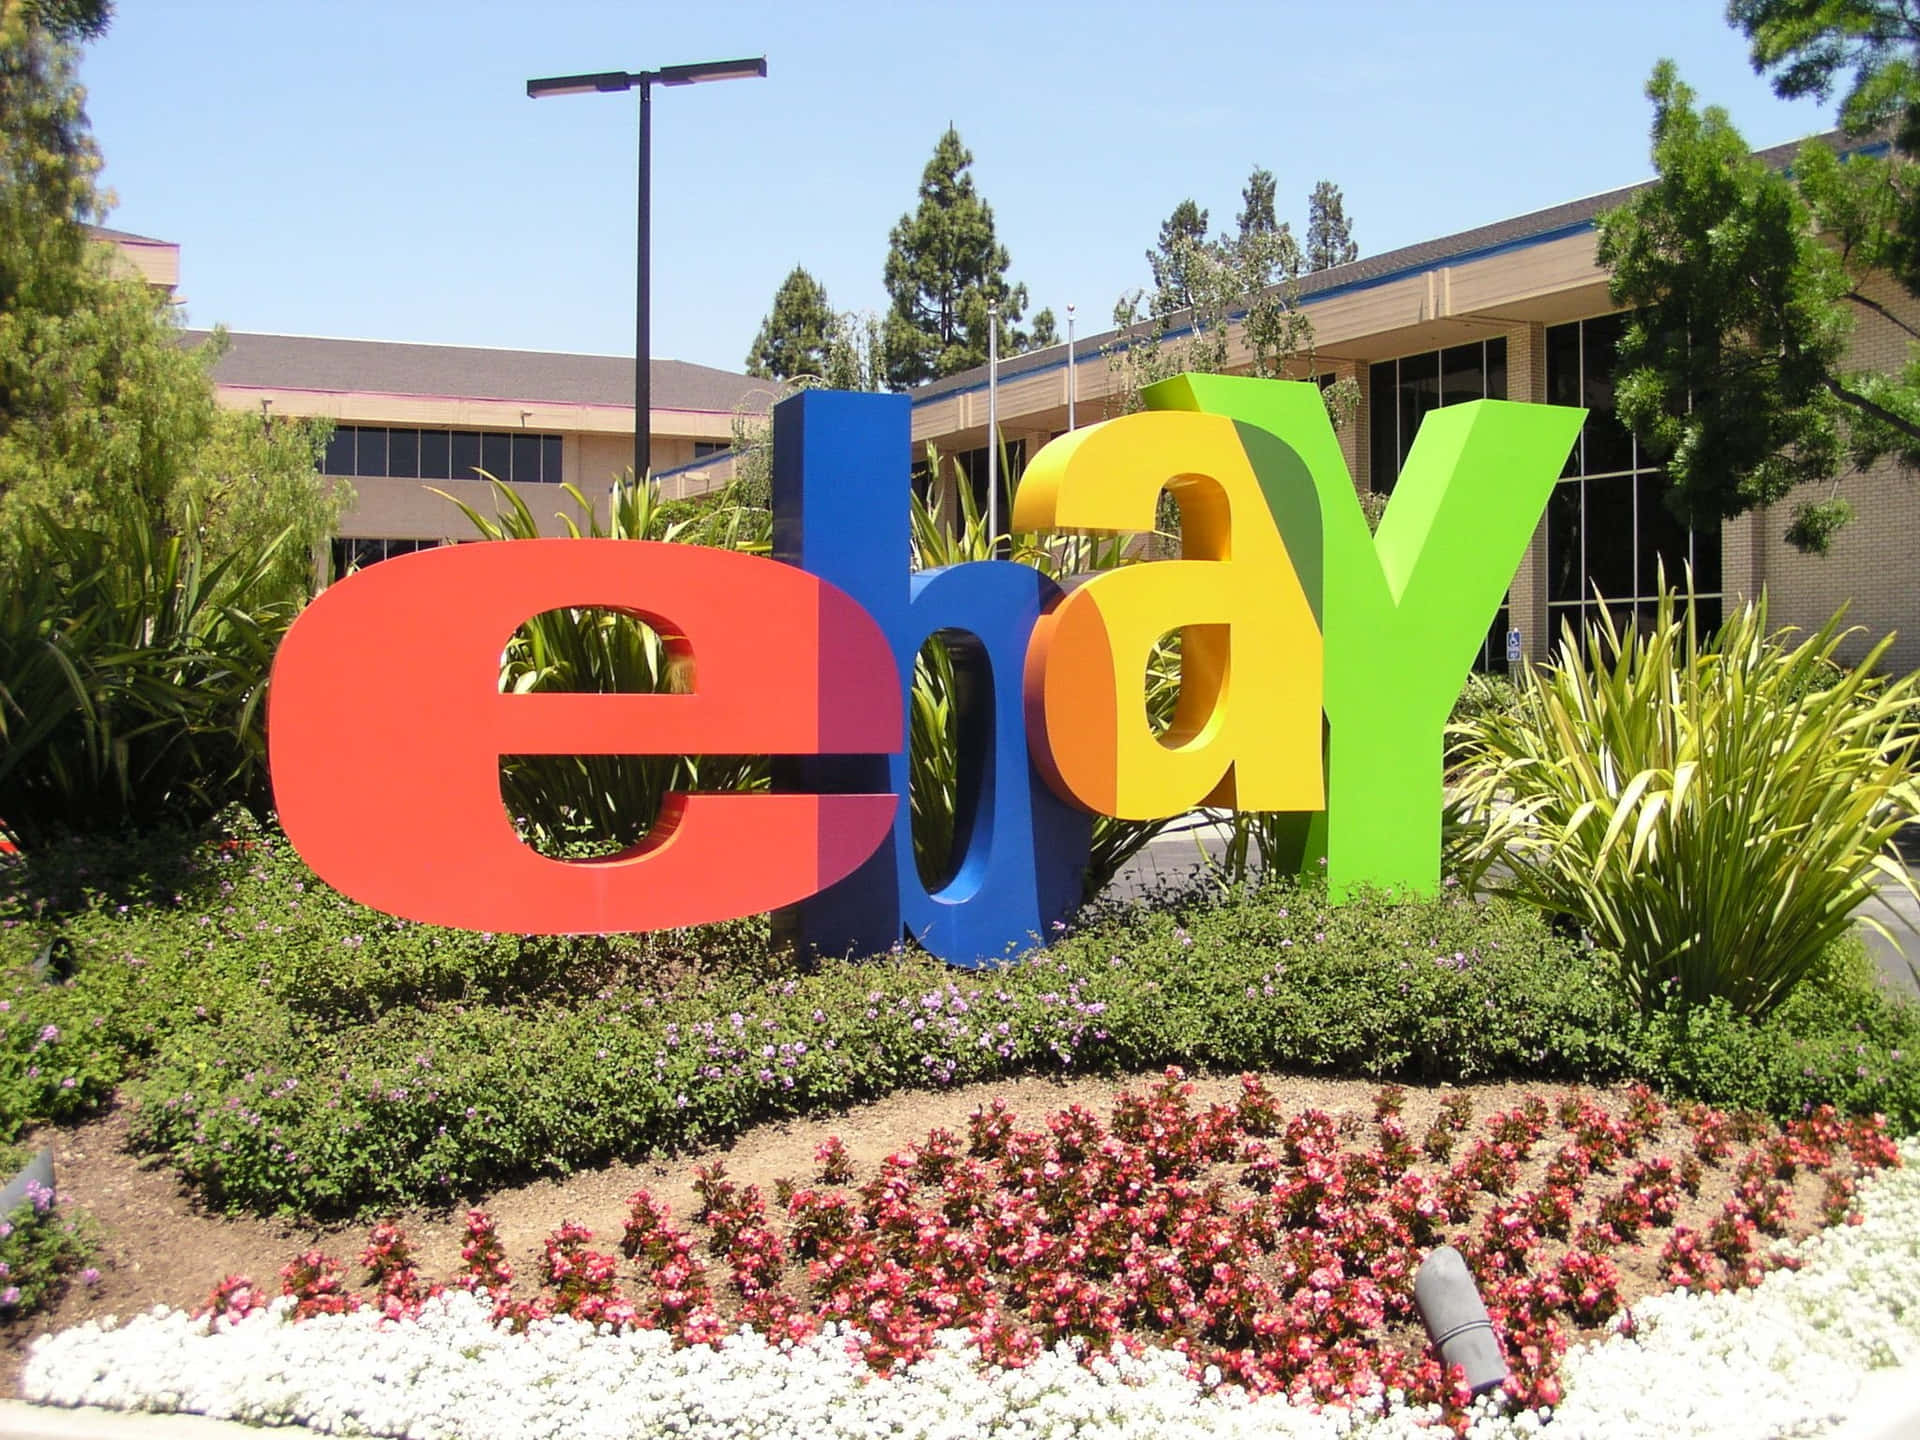 ¡compray Vende En Ebay, El Mercado En Línea Más Grande Del Mundo!